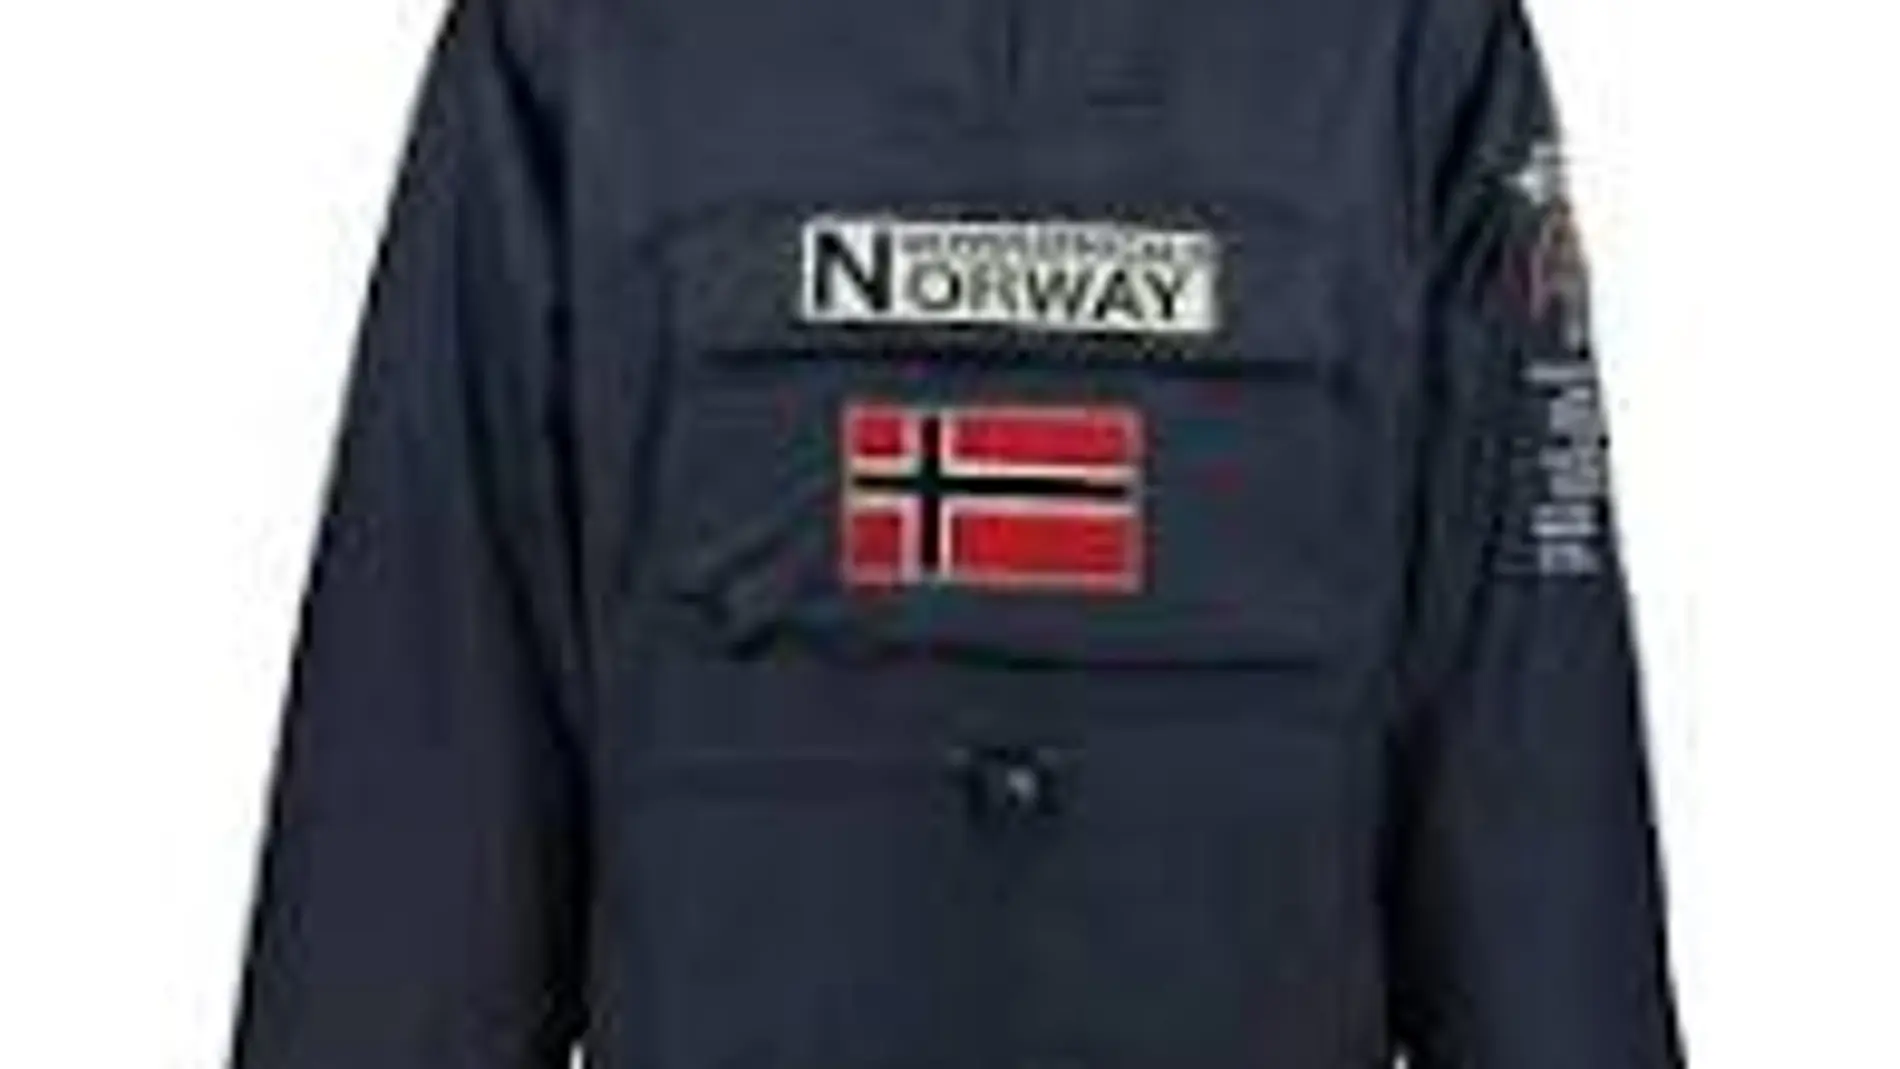 Abrigo de Geographocal Norway rebajado